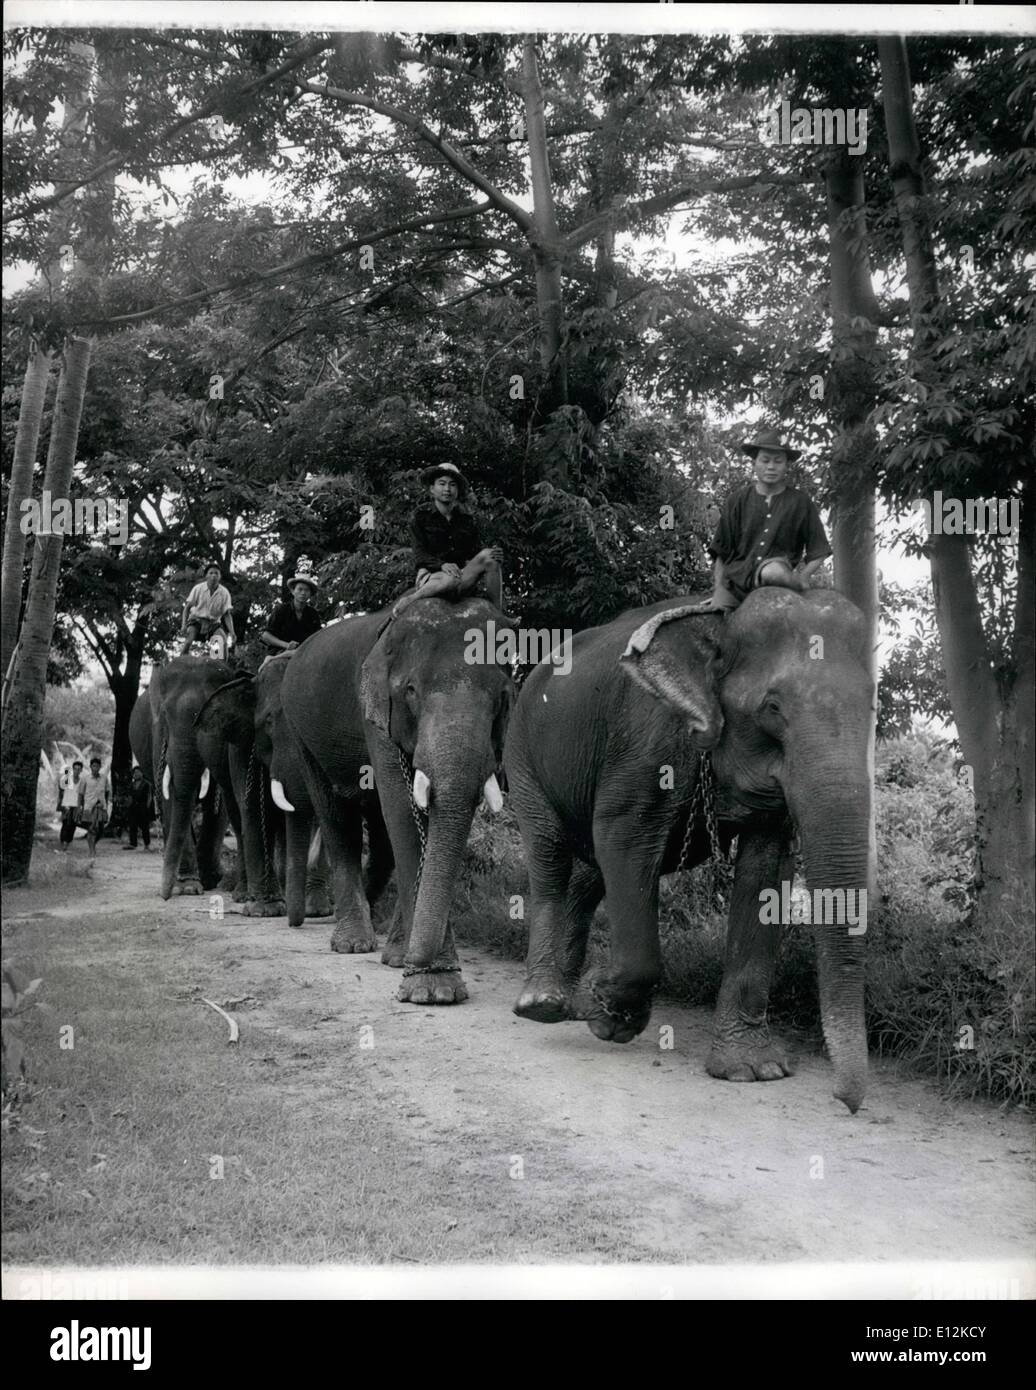 24 février 2012 - Une équipe d'éléphants appartenant à la société Borneo sur leur lieu de travail sur le teck de sciage par un siamois, chacun se vanter a un ''livre'' donnant des détails de son âge, et l'enregistrement de travail. L'entreprise a essayé le tracteurs, mais les éléphants sont toujours le meilleur moyen de faire passer la lourdes billes.  :''Jumbo'' est toujours supérieure à l'entraîneur dans la forêt de teck siamois mais le chien ont à se méfier du frogman voleur, vingtième siècle, la science n'a toujours pas fourni une meilleure aide à l'industrie de la Thaïlande en teck ''Gros'' Banque D'Images